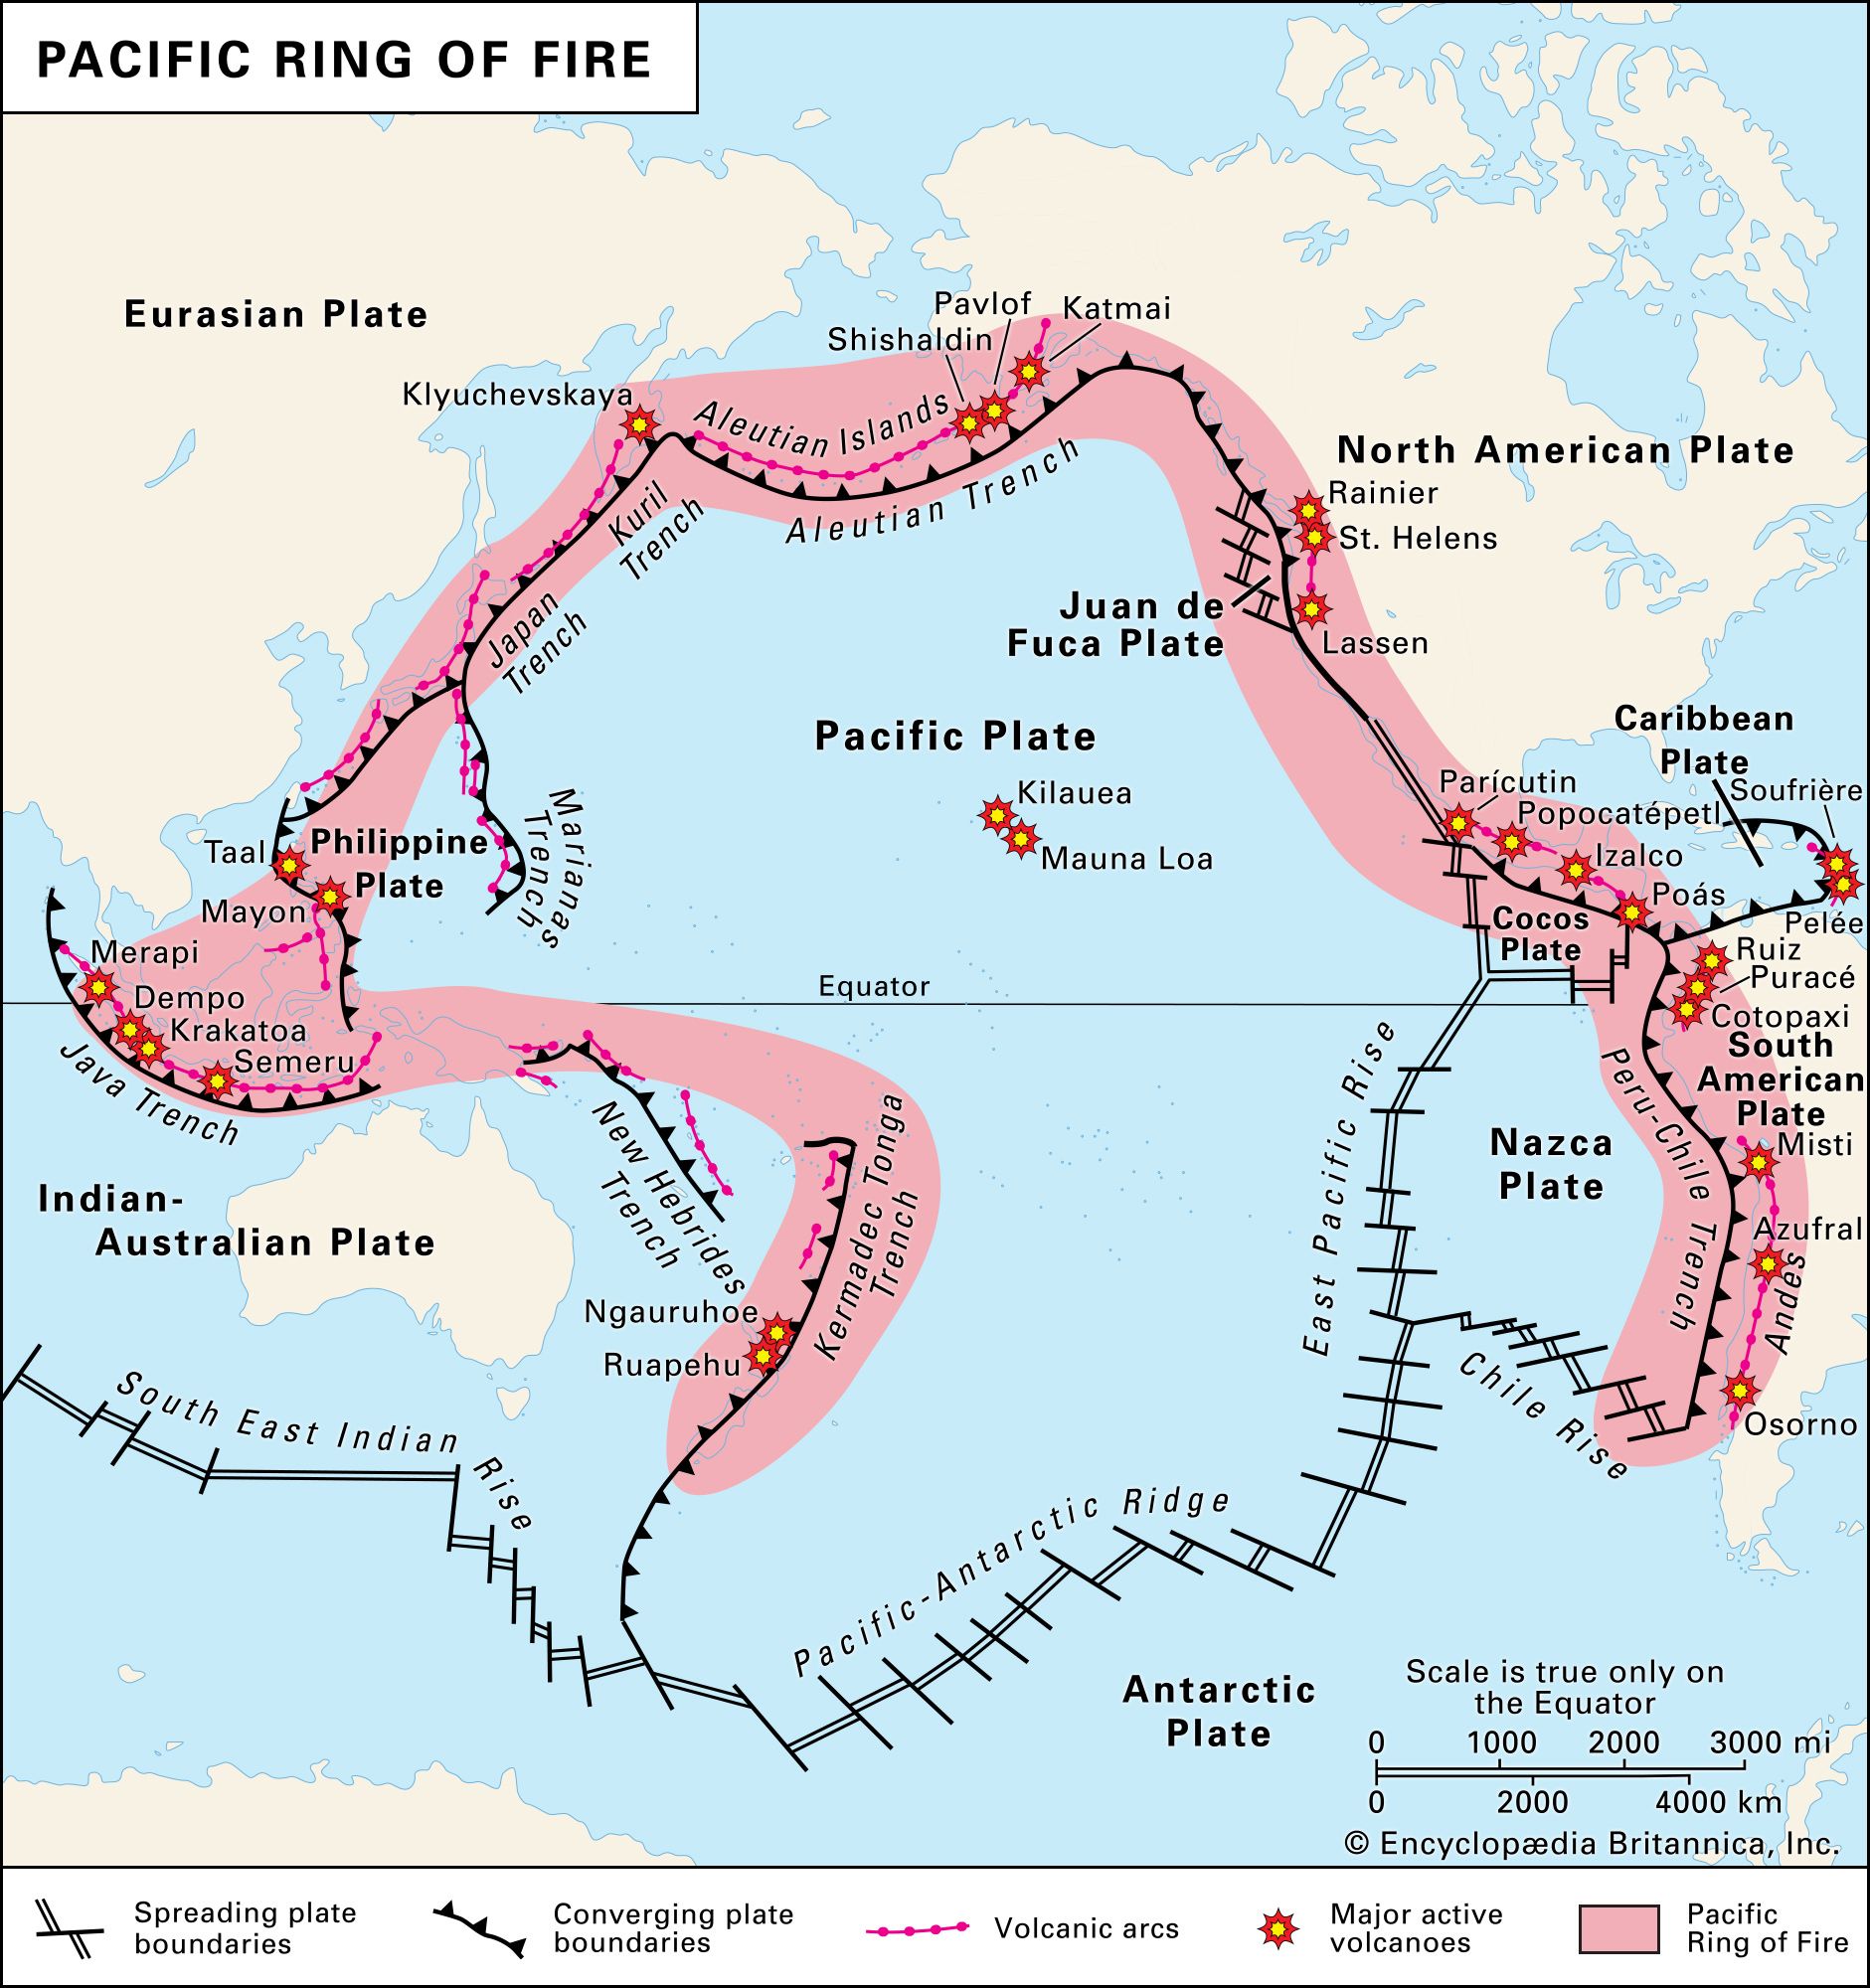 Pasifik Okyanusu'nu çevreleyen aktif volkanlar, volkanik arklar ve tektonik plaka sınırlarından oluşan Pasifik Ateş Çemberi.